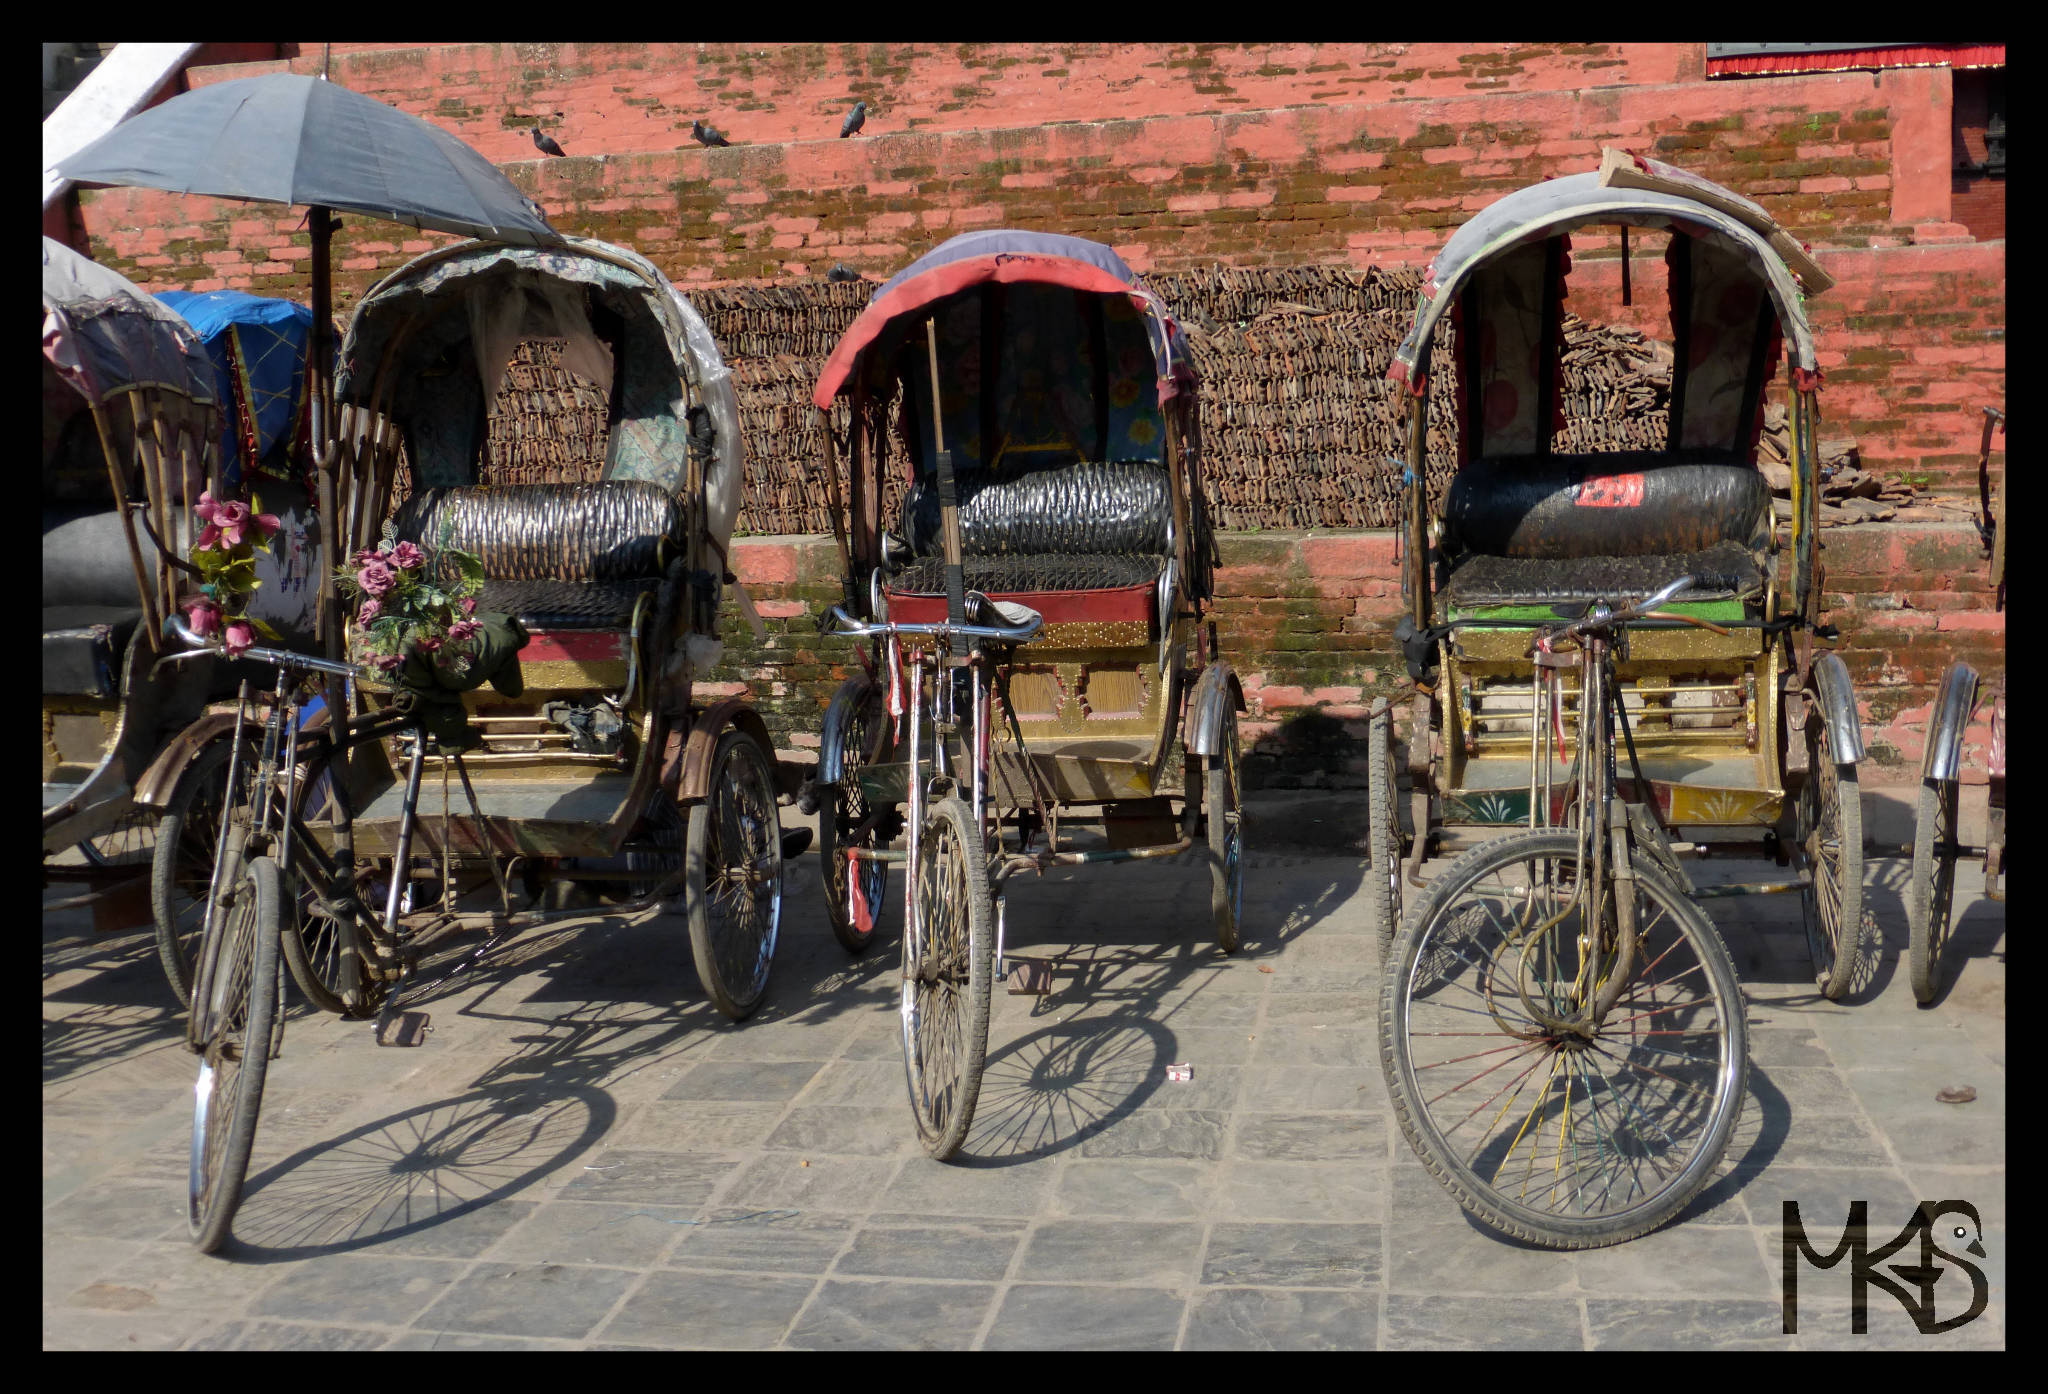 Cycle rickshaws in Kathmandu